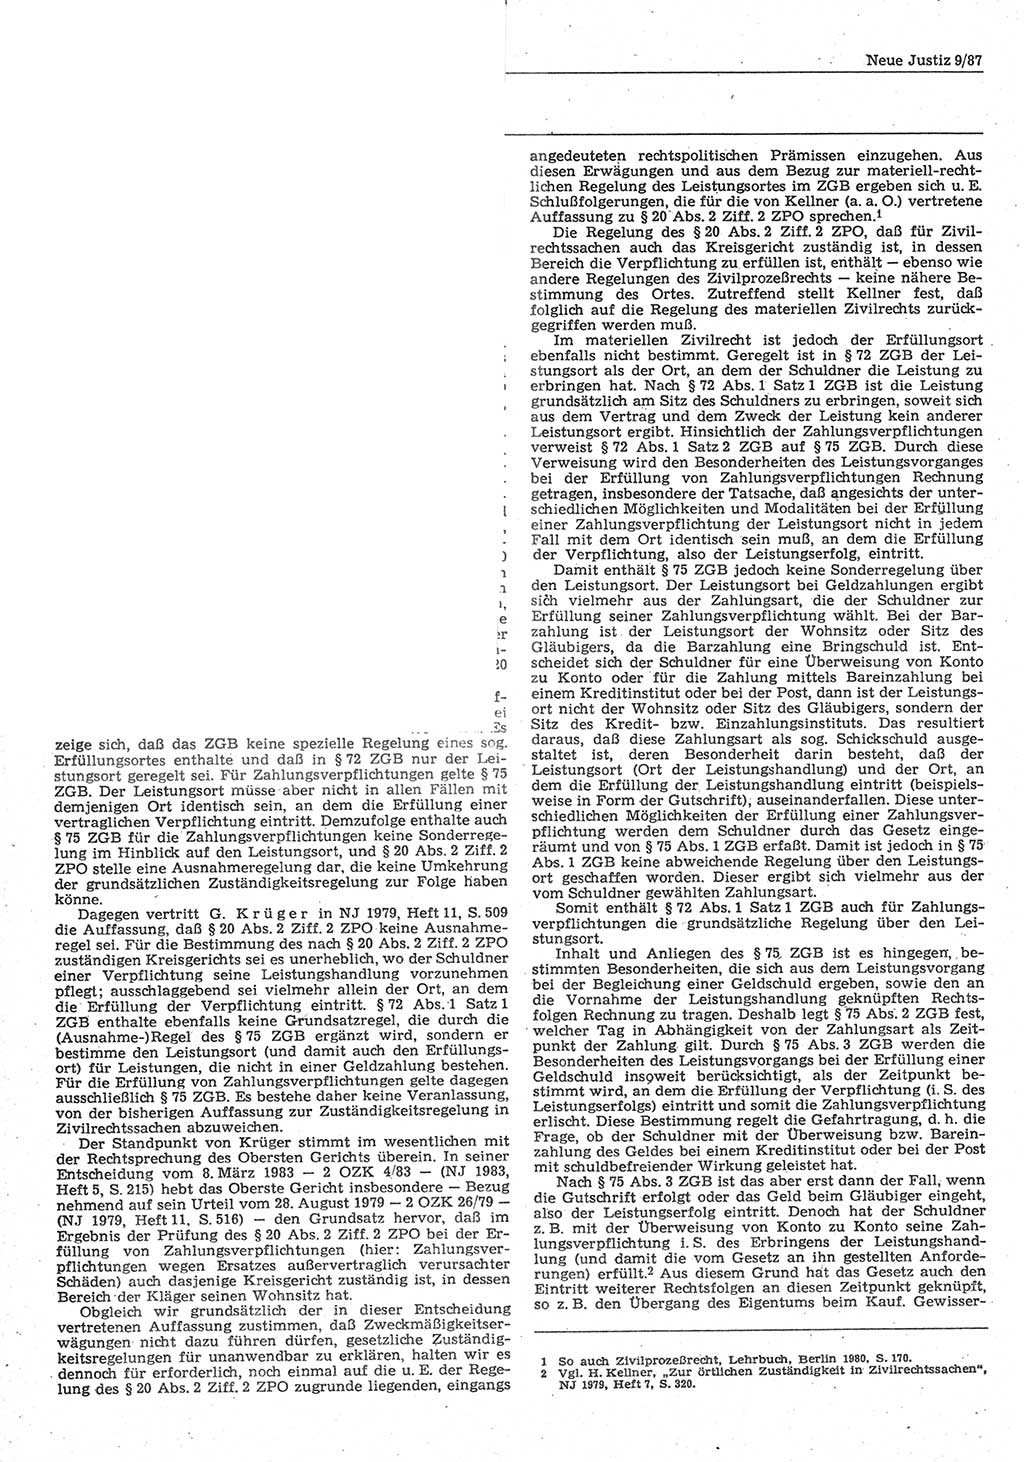 Neue Justiz (NJ), Zeitschrift für sozialistisches Recht und Gesetzlichkeit [Deutsche Demokratische Republik (DDR)], 41. Jahrgang 1987, Seite 372 (NJ DDR 1987, S. 372)